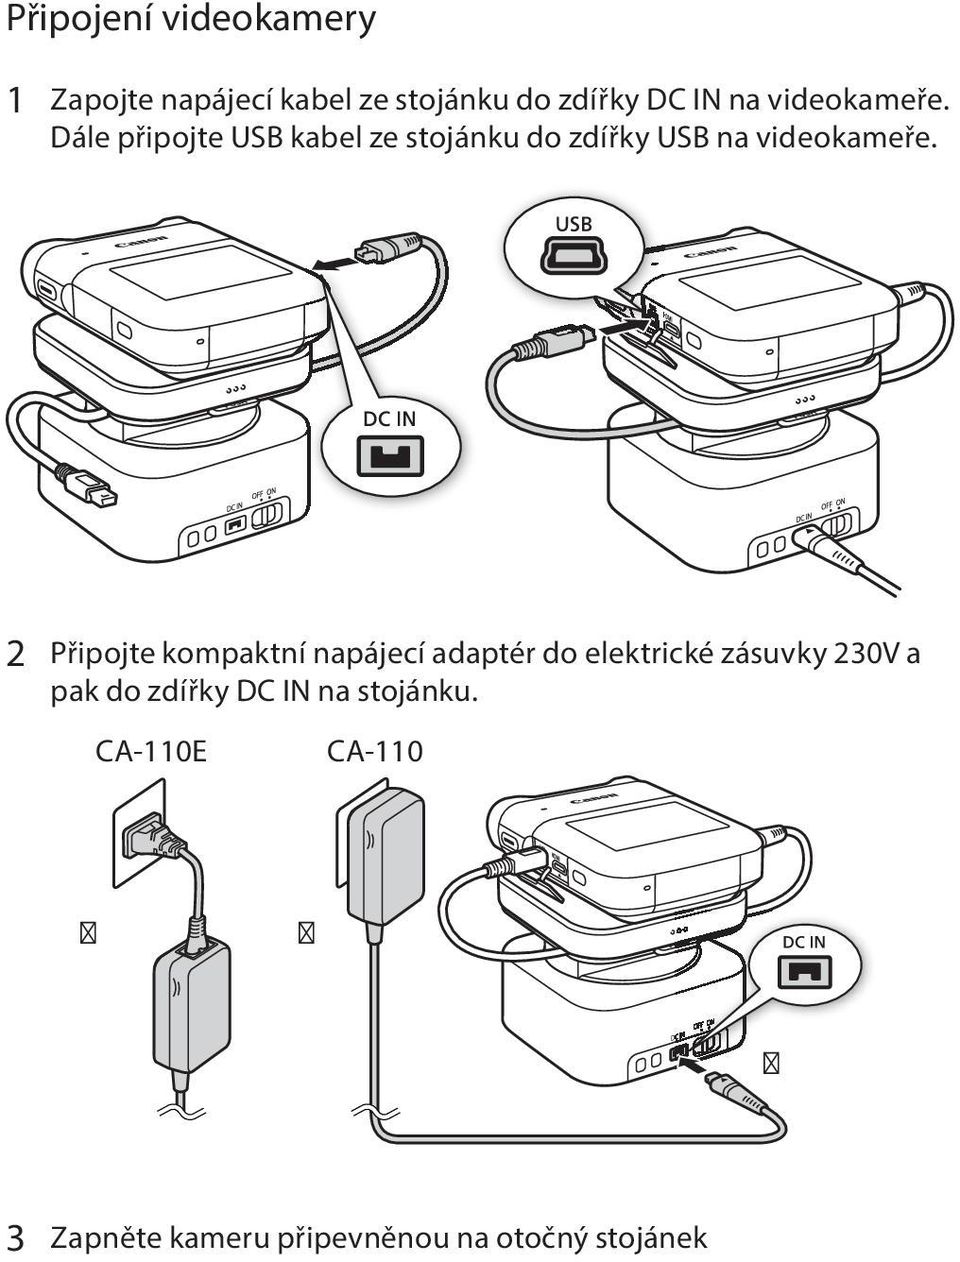 2 Připojte kompaktní napájecí adaptér do elektrické zásuvky 230V a pak do